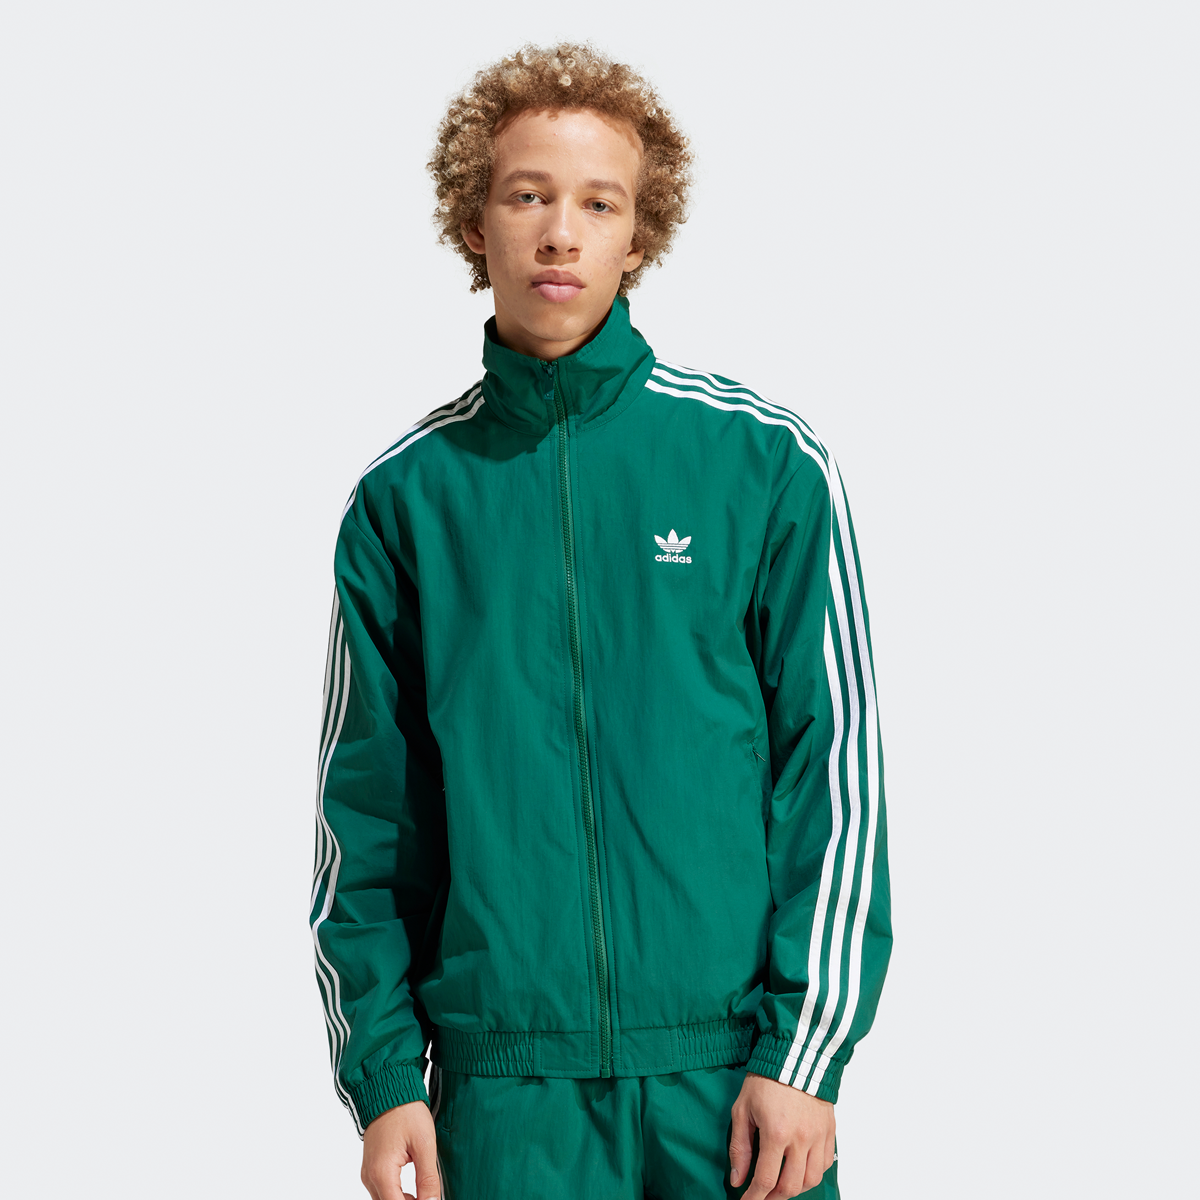 Adidas Originals 3-stripes Woven Firebird Trainingsjack Trainingsjassen Heren collegiate green maat: XL beschikbare maaten:S M L XL